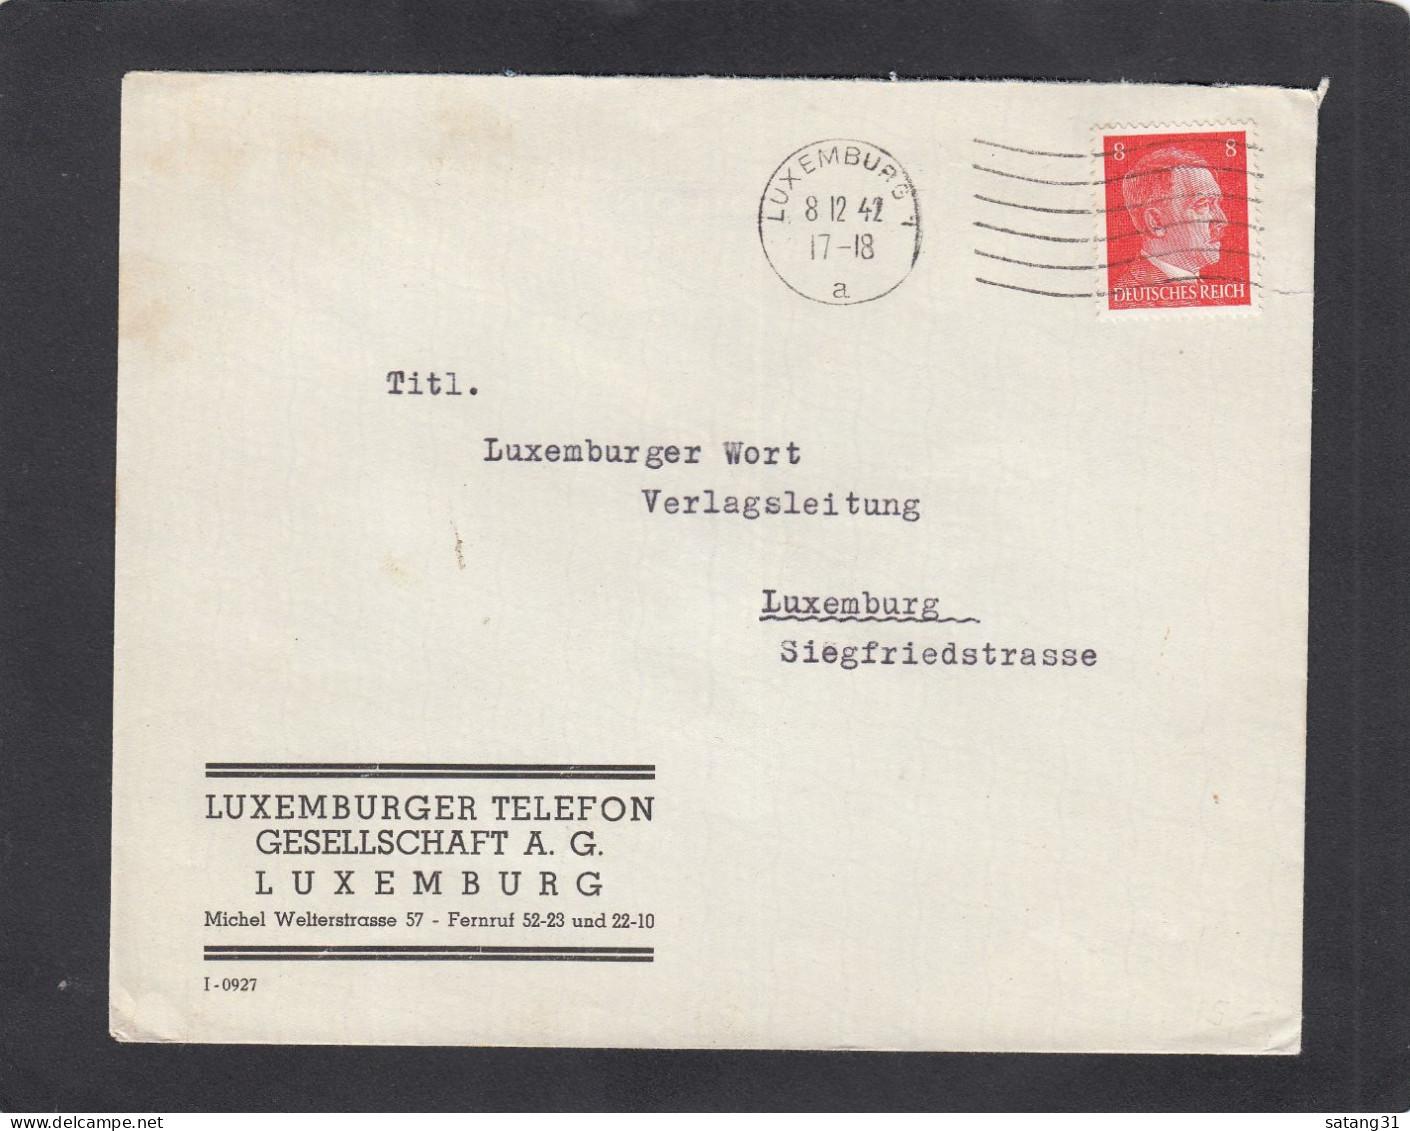 LUXEMBURGER TELEFON GESELLSCHAFT A.G., LUXEMBURG. - 1940-1944 Deutsche Besatzung